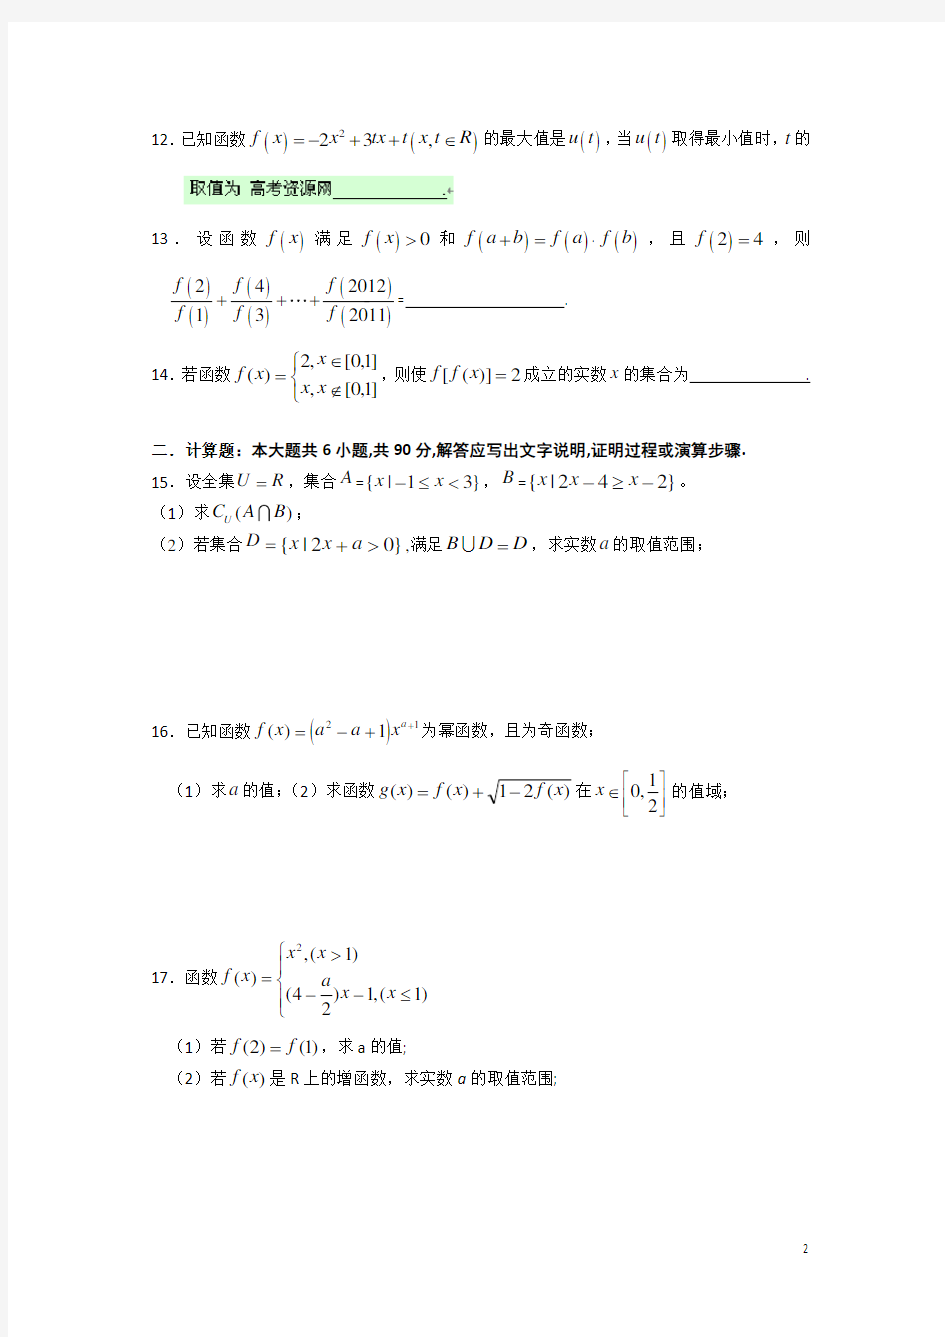 江苏启东中学2013-2014学年高一第一学期期中考试数学